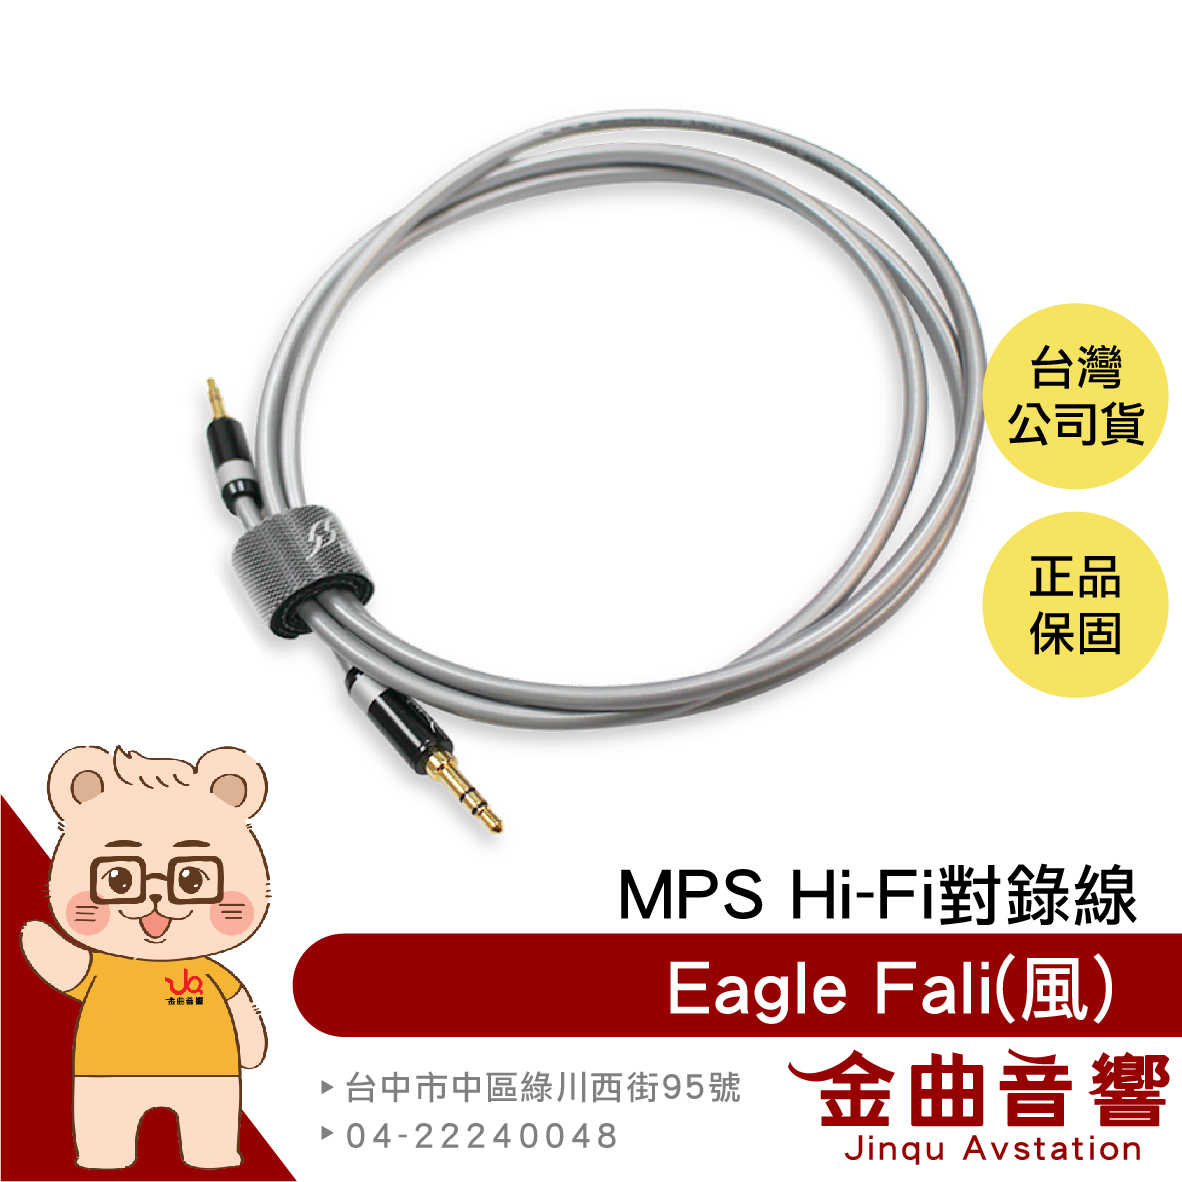 MPS Eagle Fali 風 高純度單晶銅線 3.5mm AUX Hi-Fi 對錄線 台灣品牌 | 金曲音響